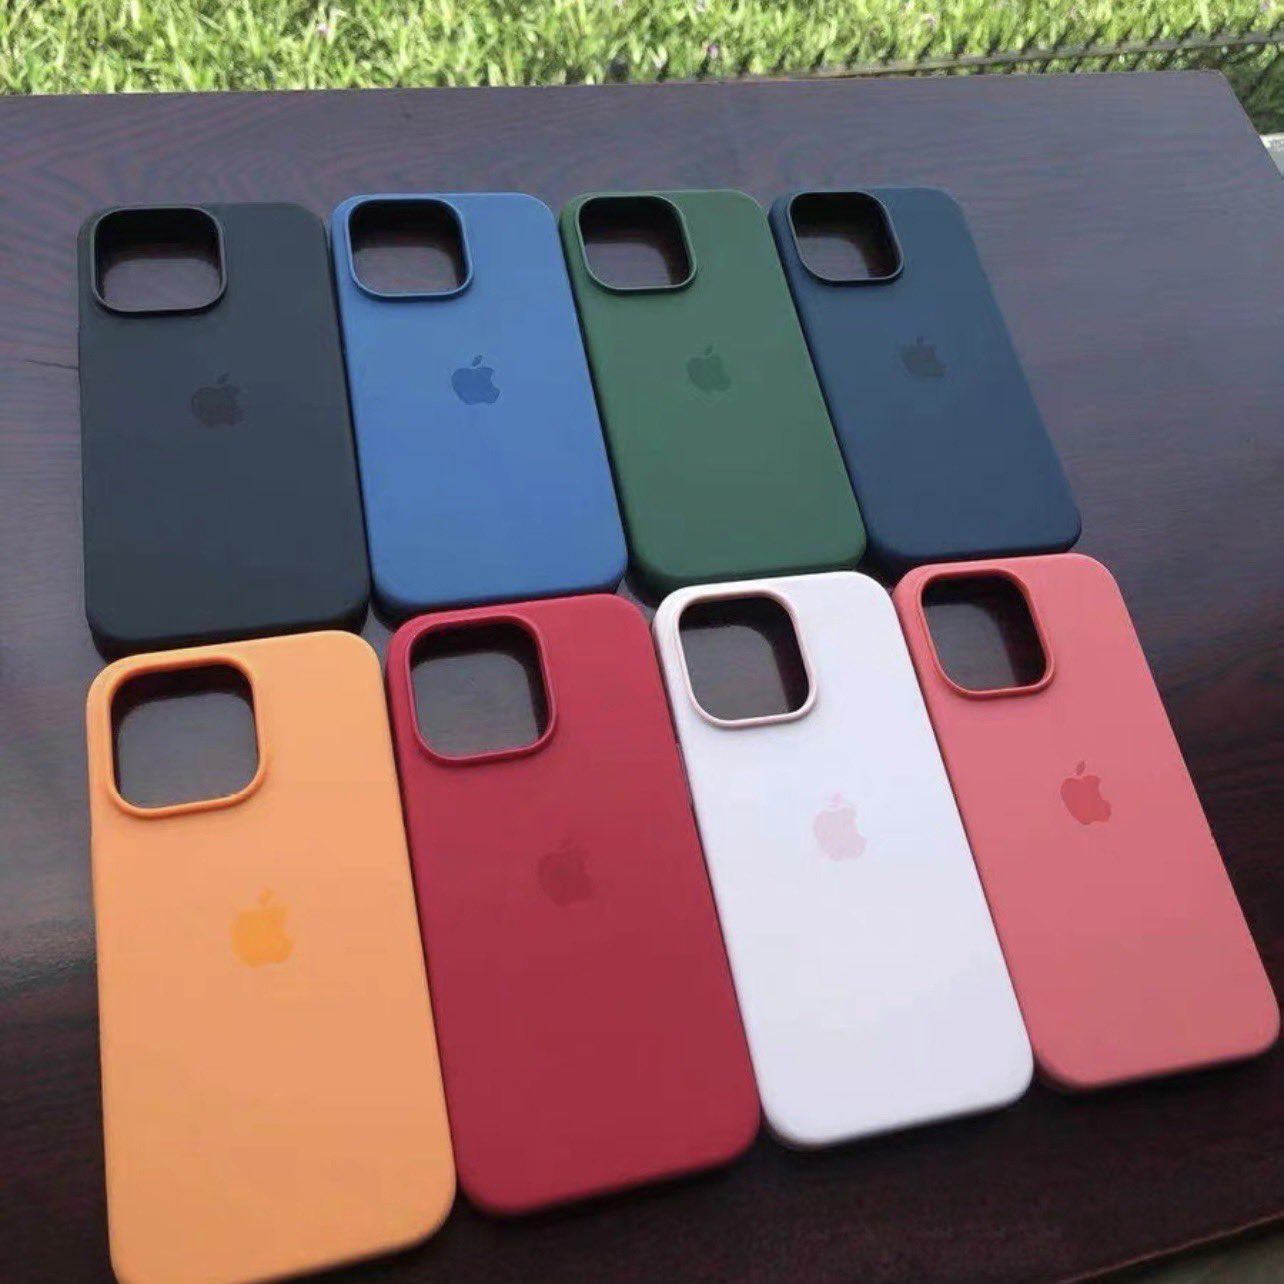 苹果发布会前夕,iphone 13/pro 系列四款机型的官方保护壳曝光